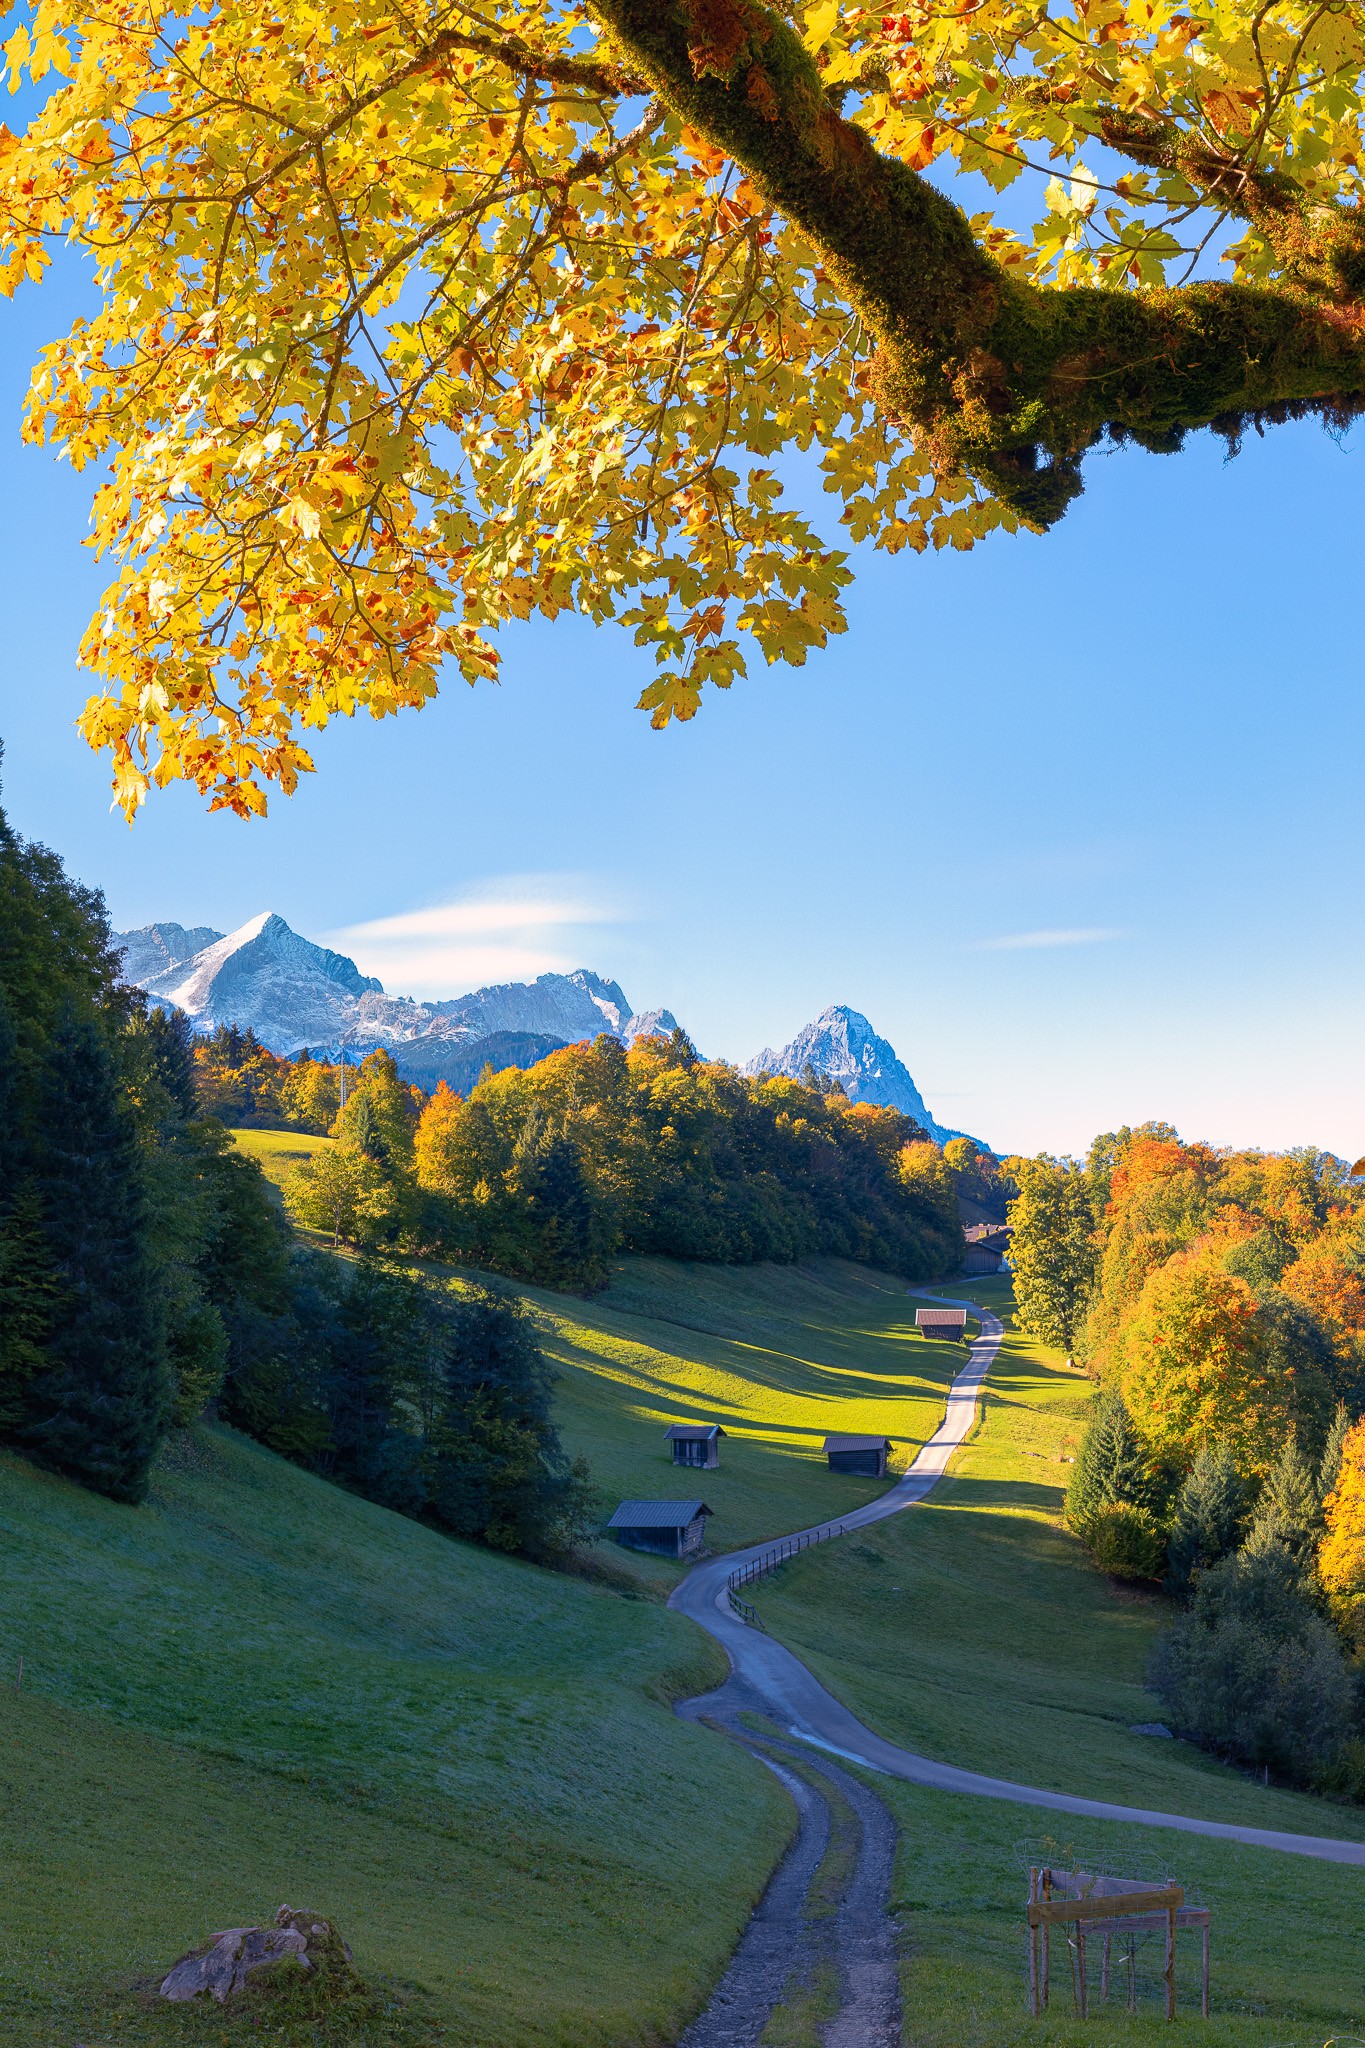 Herbst am Wamberg, die Laubbäume sind bereits schön gefärbt und auf den Bergen (Alpspitze, Zugspitze und Waxenstein) liegt bereits der erste Schnee.